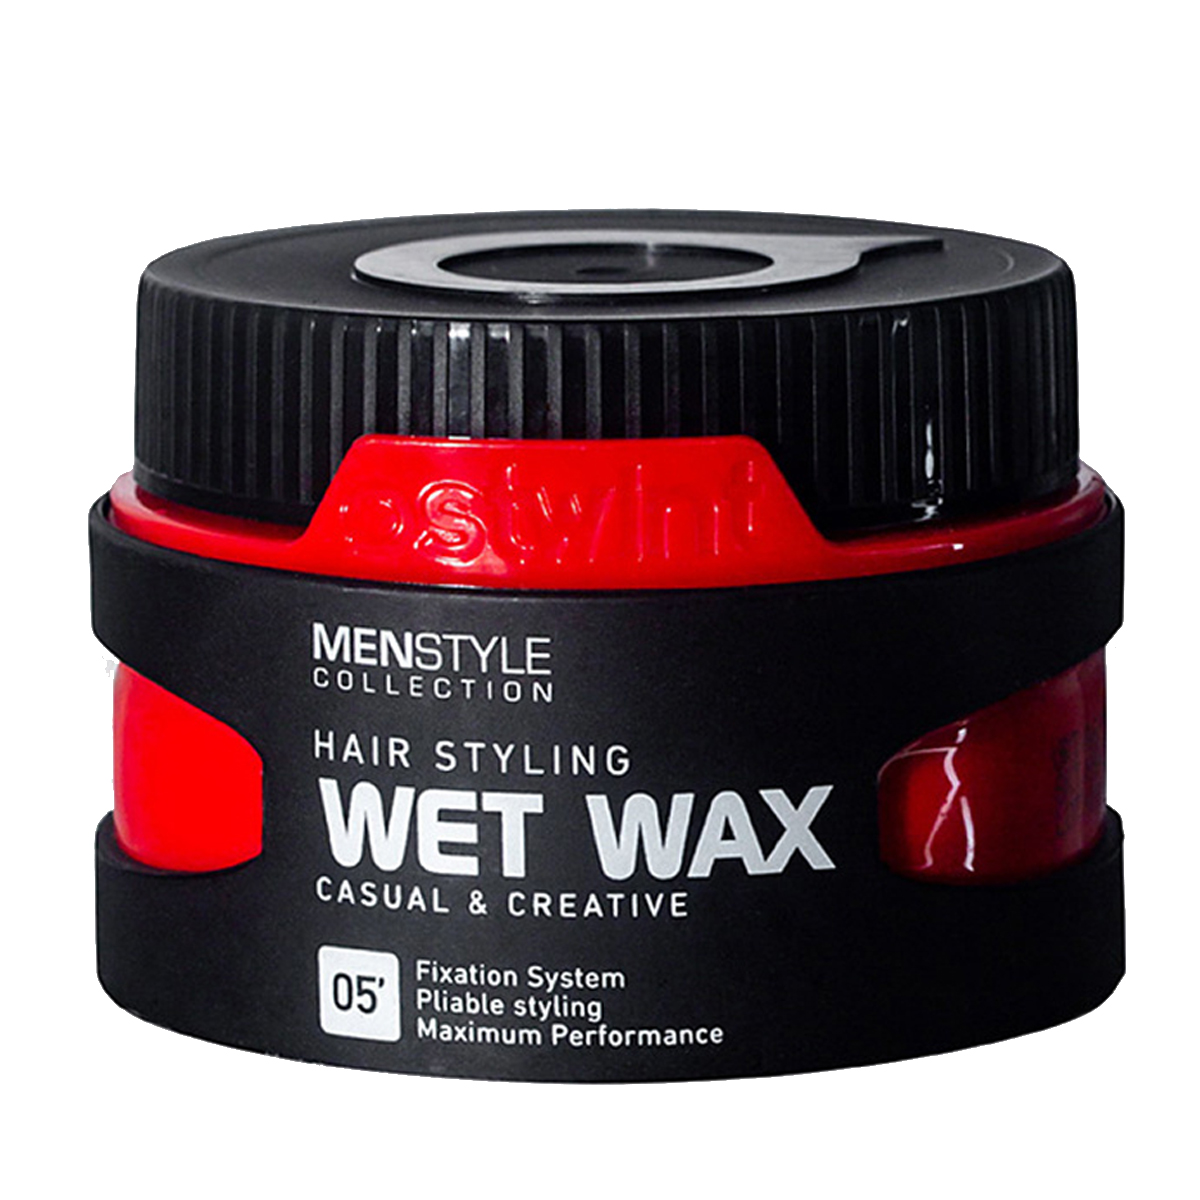 واکس مو خیس~Wet Wax~OSTWINT